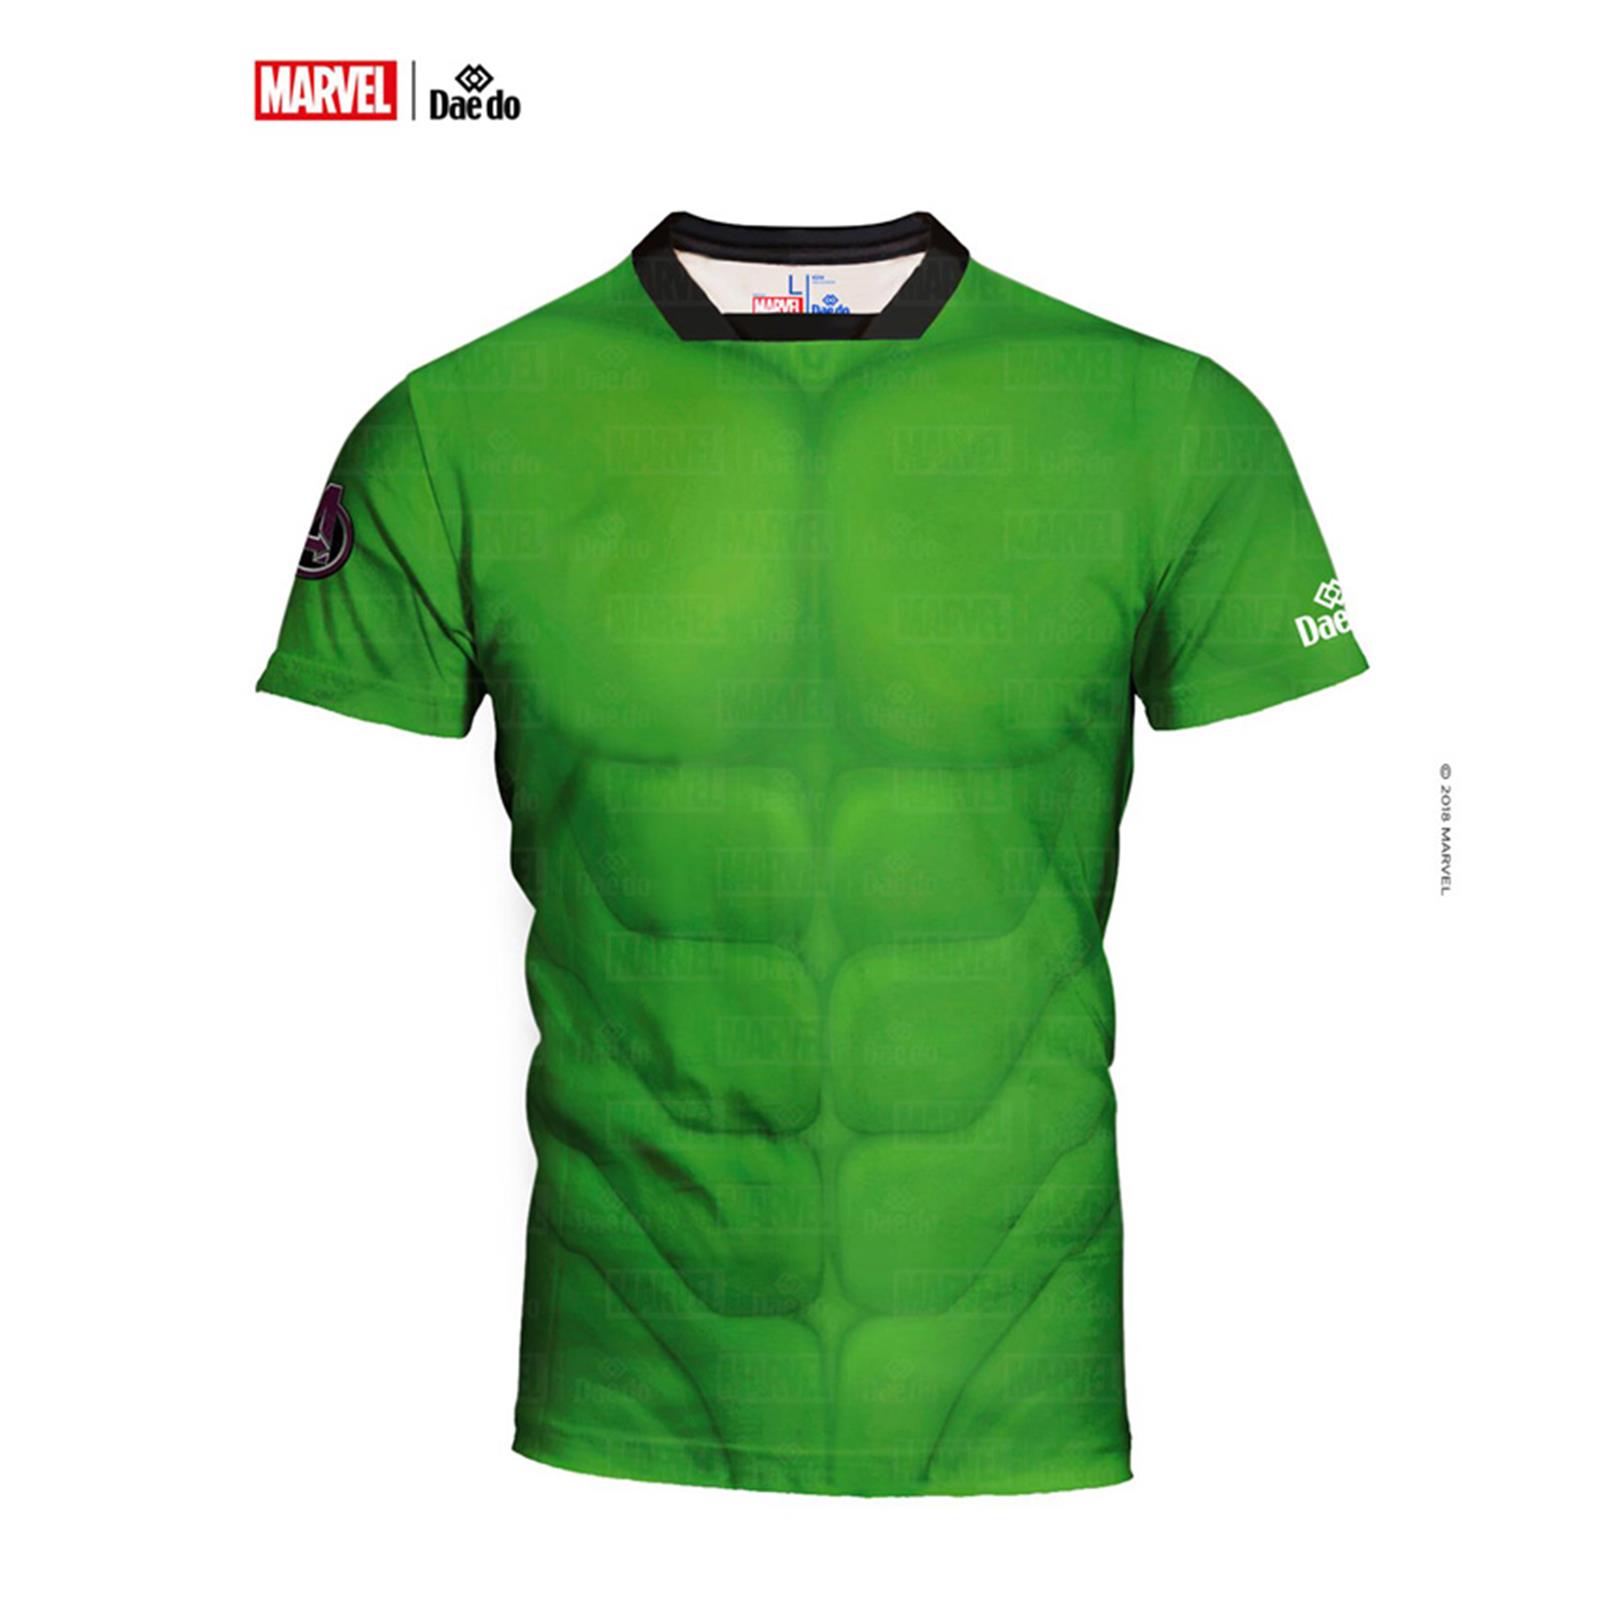 Dae Do Maglietta Hulk Full Print Slim Fit